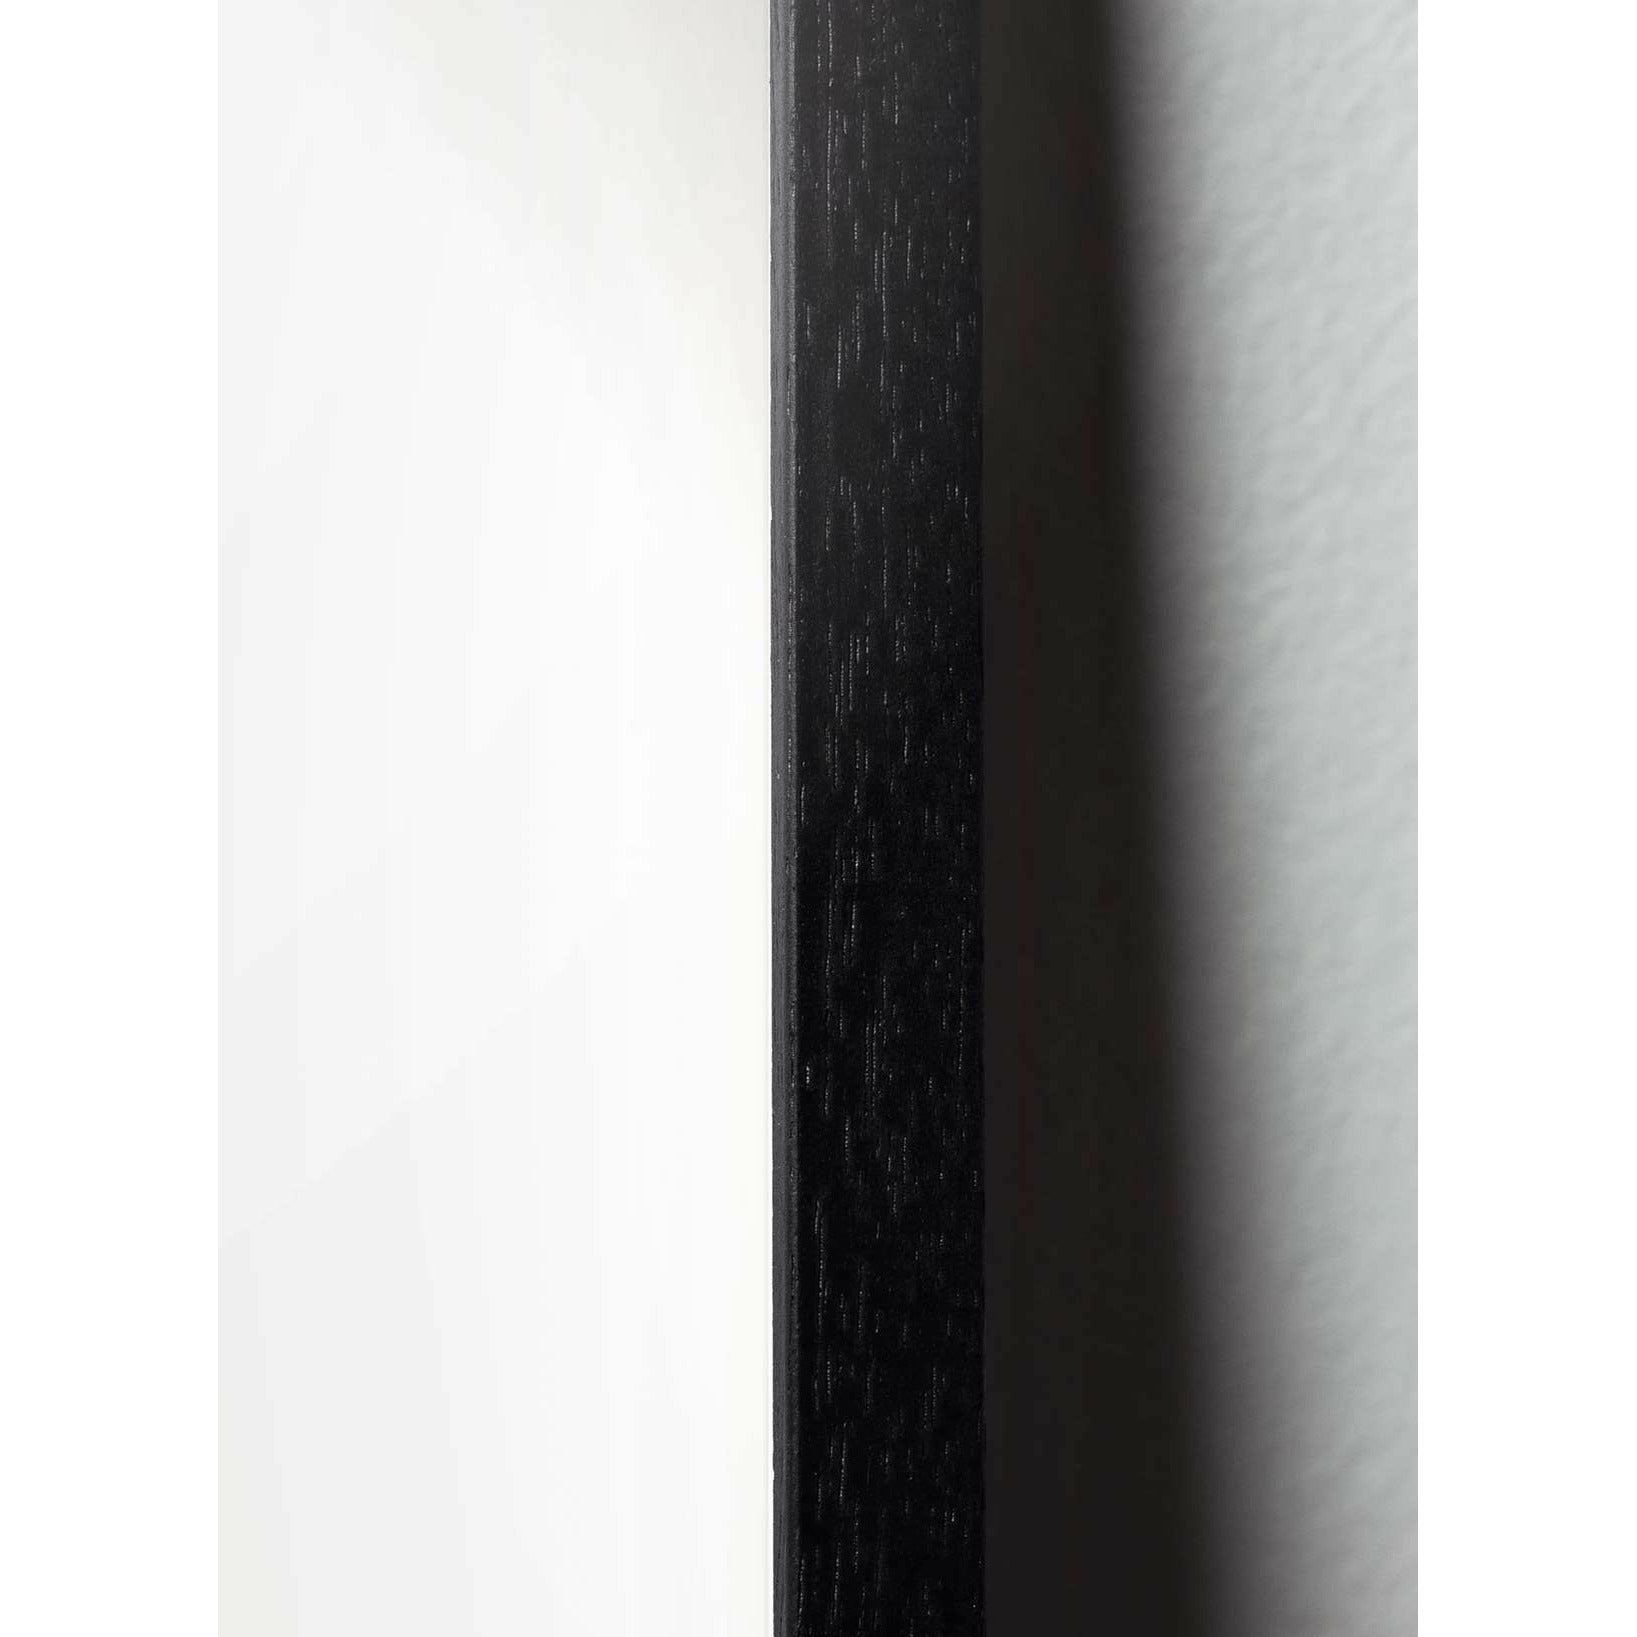 Póster clásico de huevo de creación, marco en madera lacada negra de 30x40 cm, fondo azul oscuro